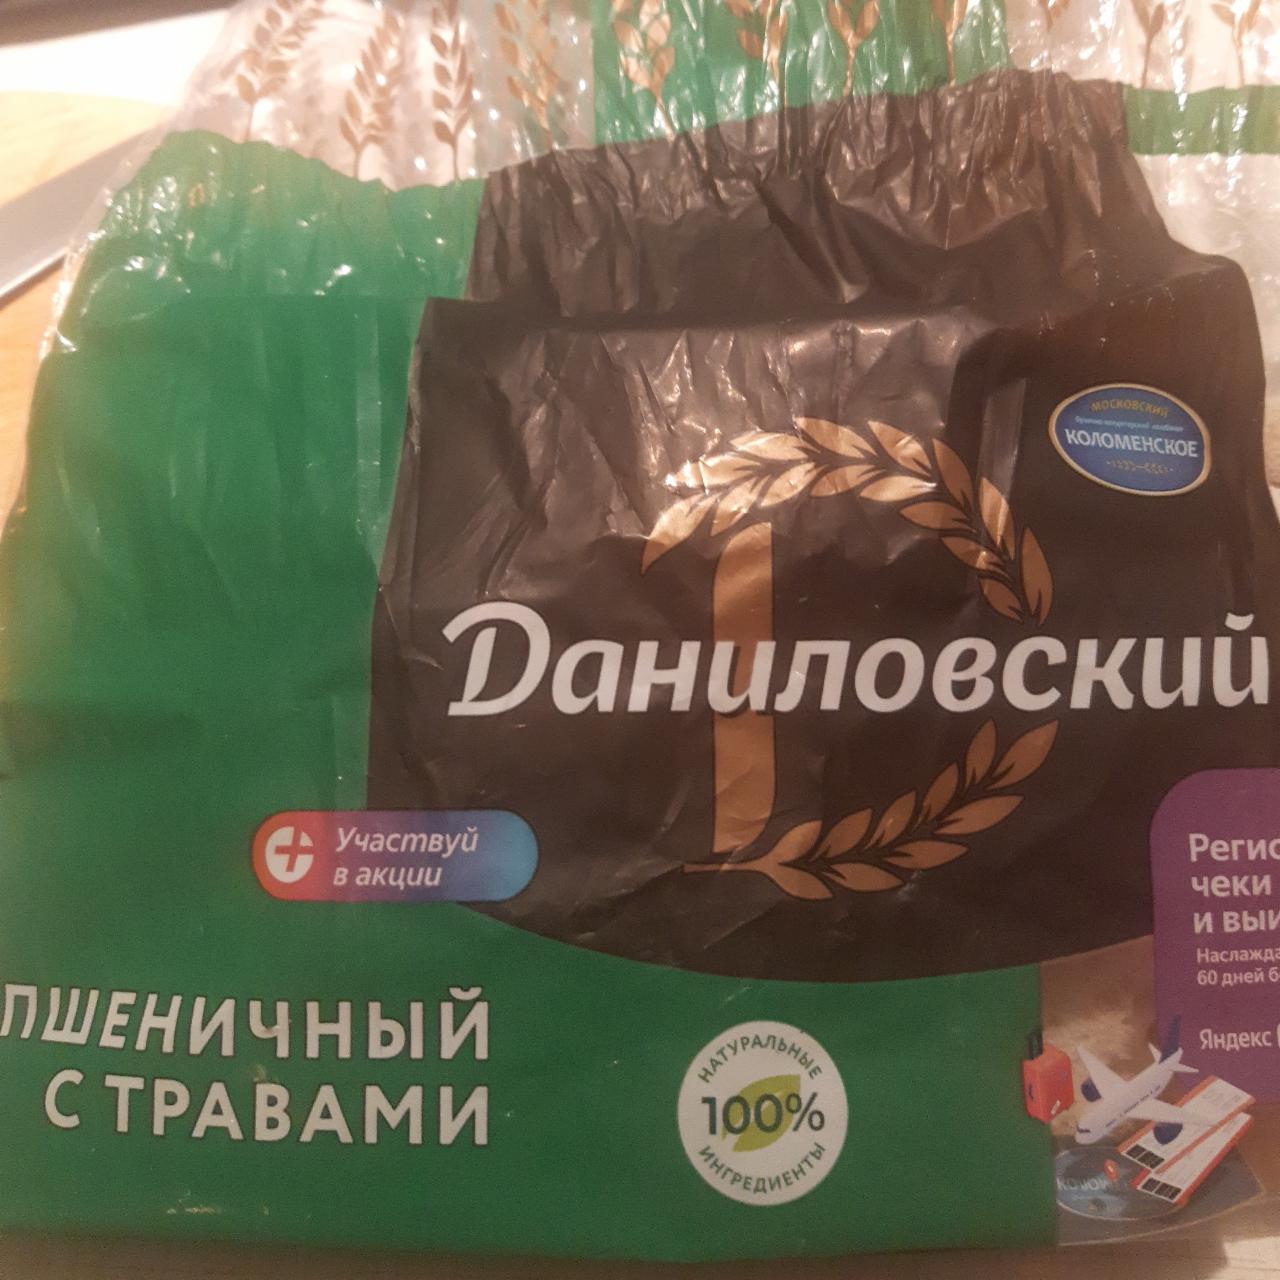 Фото - Хлеб Даниловский пшеничный с травами Коломенское